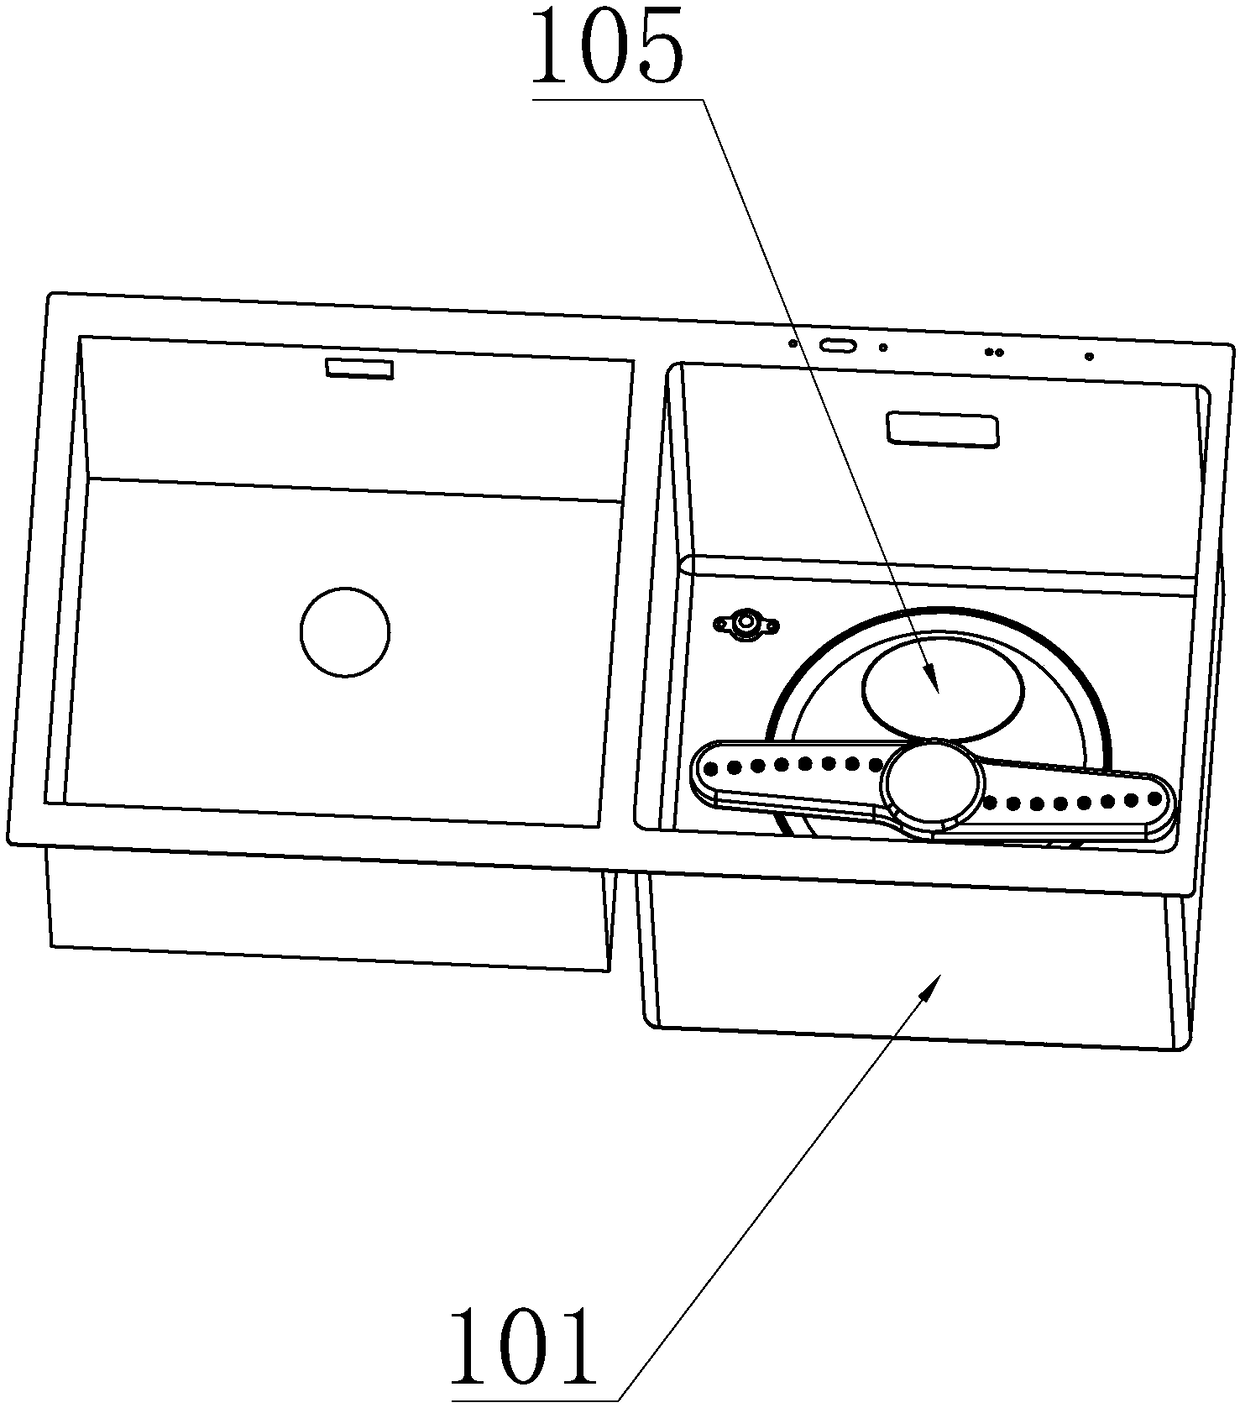 Control method of garbage crusher for water tank dish-washing machine